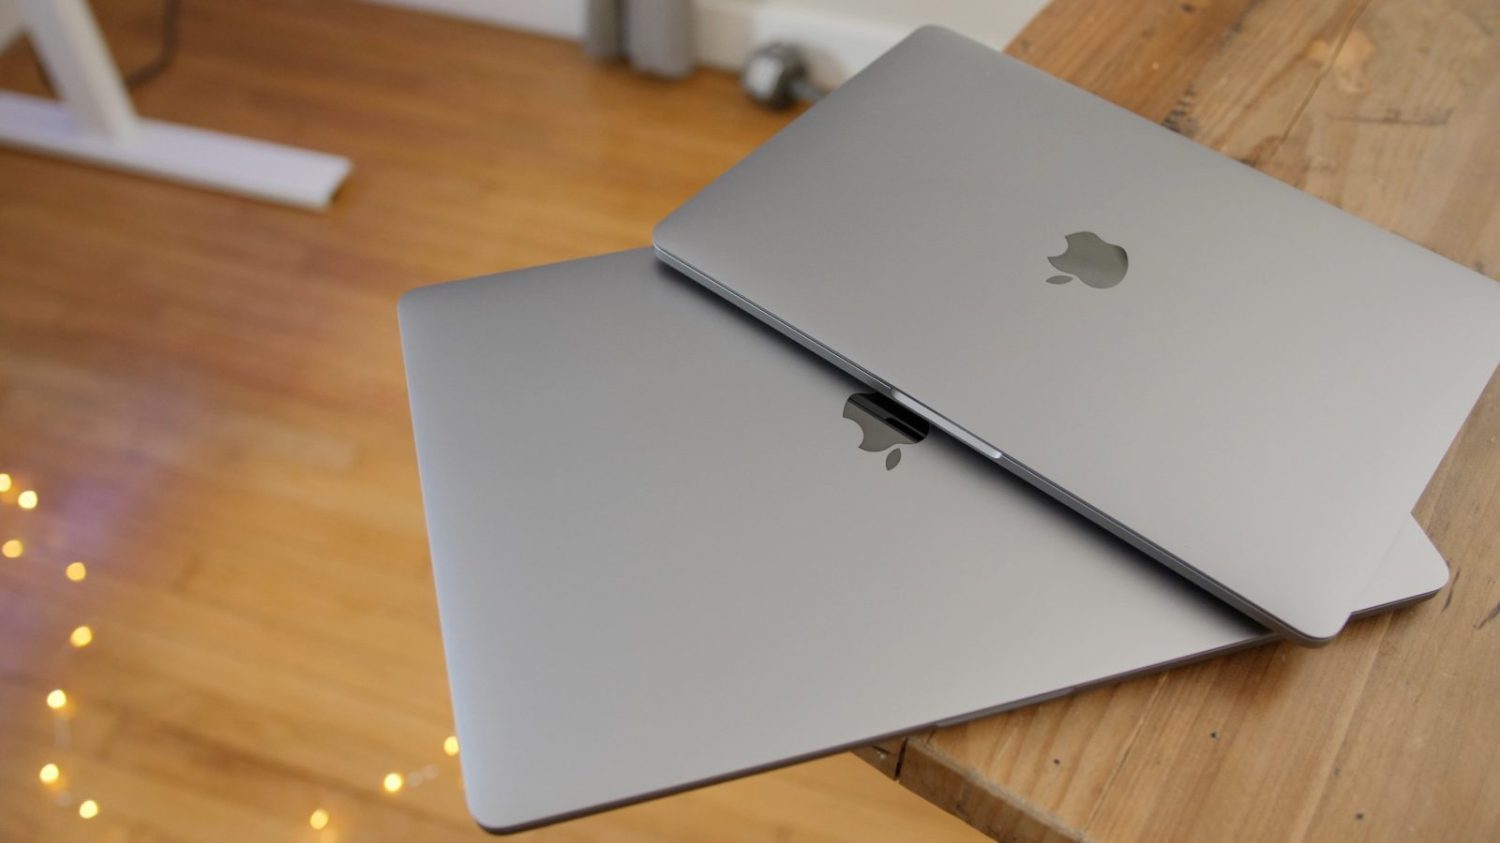 Rumor: 14-inch MacBook Pro to launch in 2021 - 9to5Mac